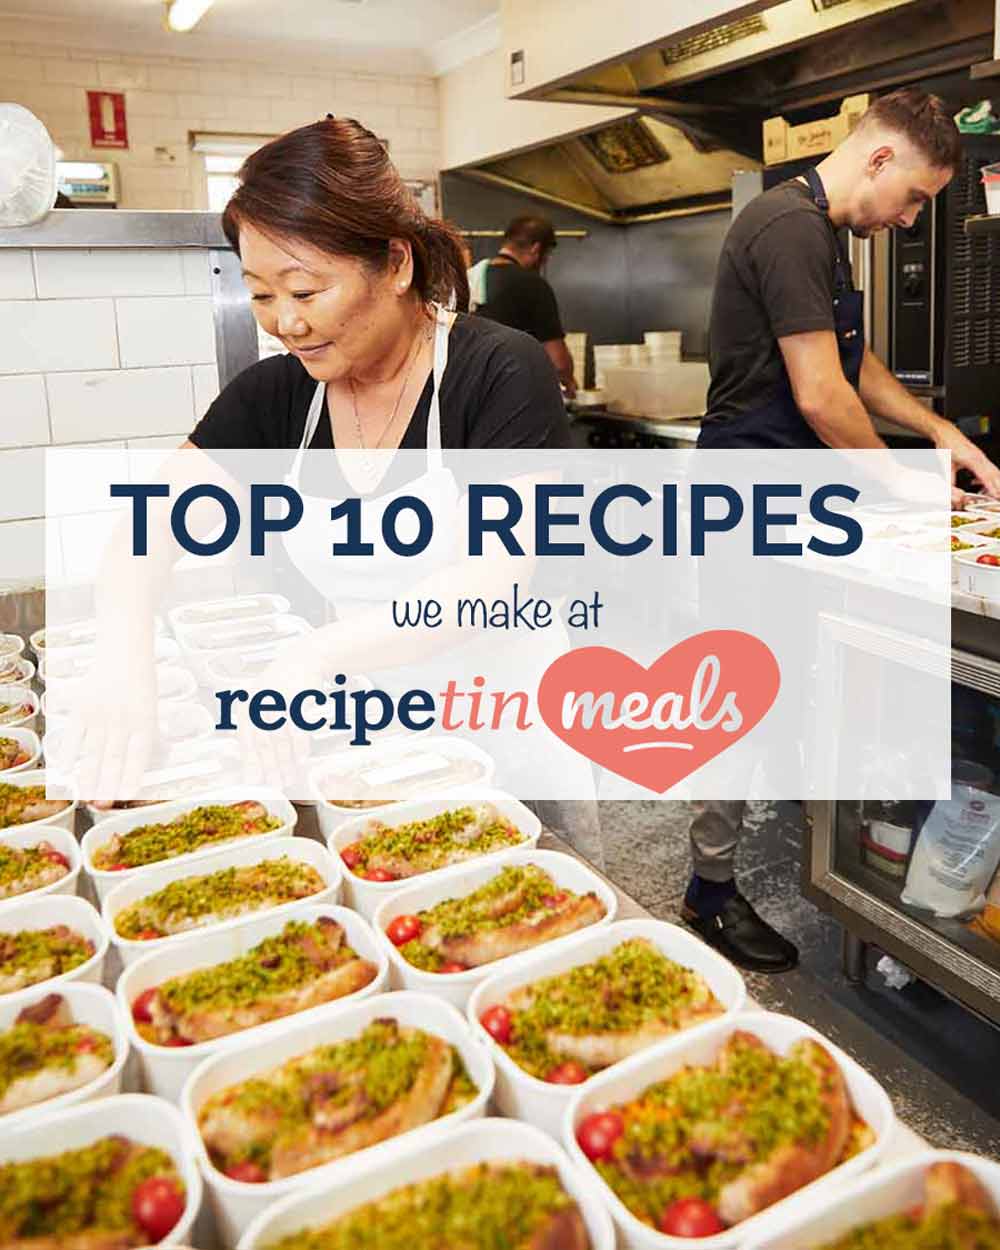 Top 10 recipes we make at RecipeTin Meals